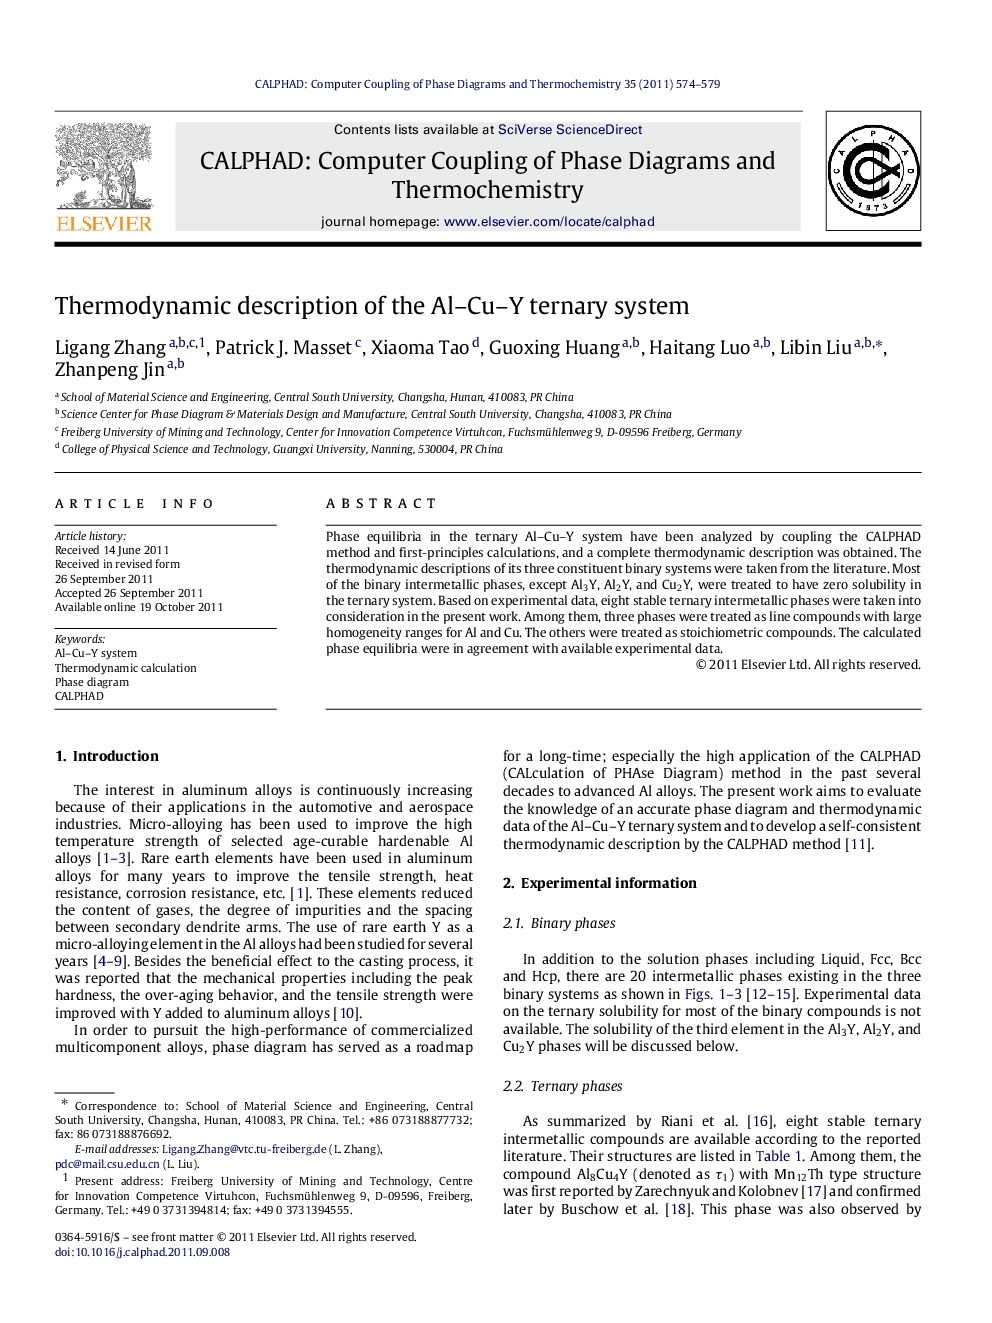 Thermodynamic description of the Al-Cu-Y ternary system